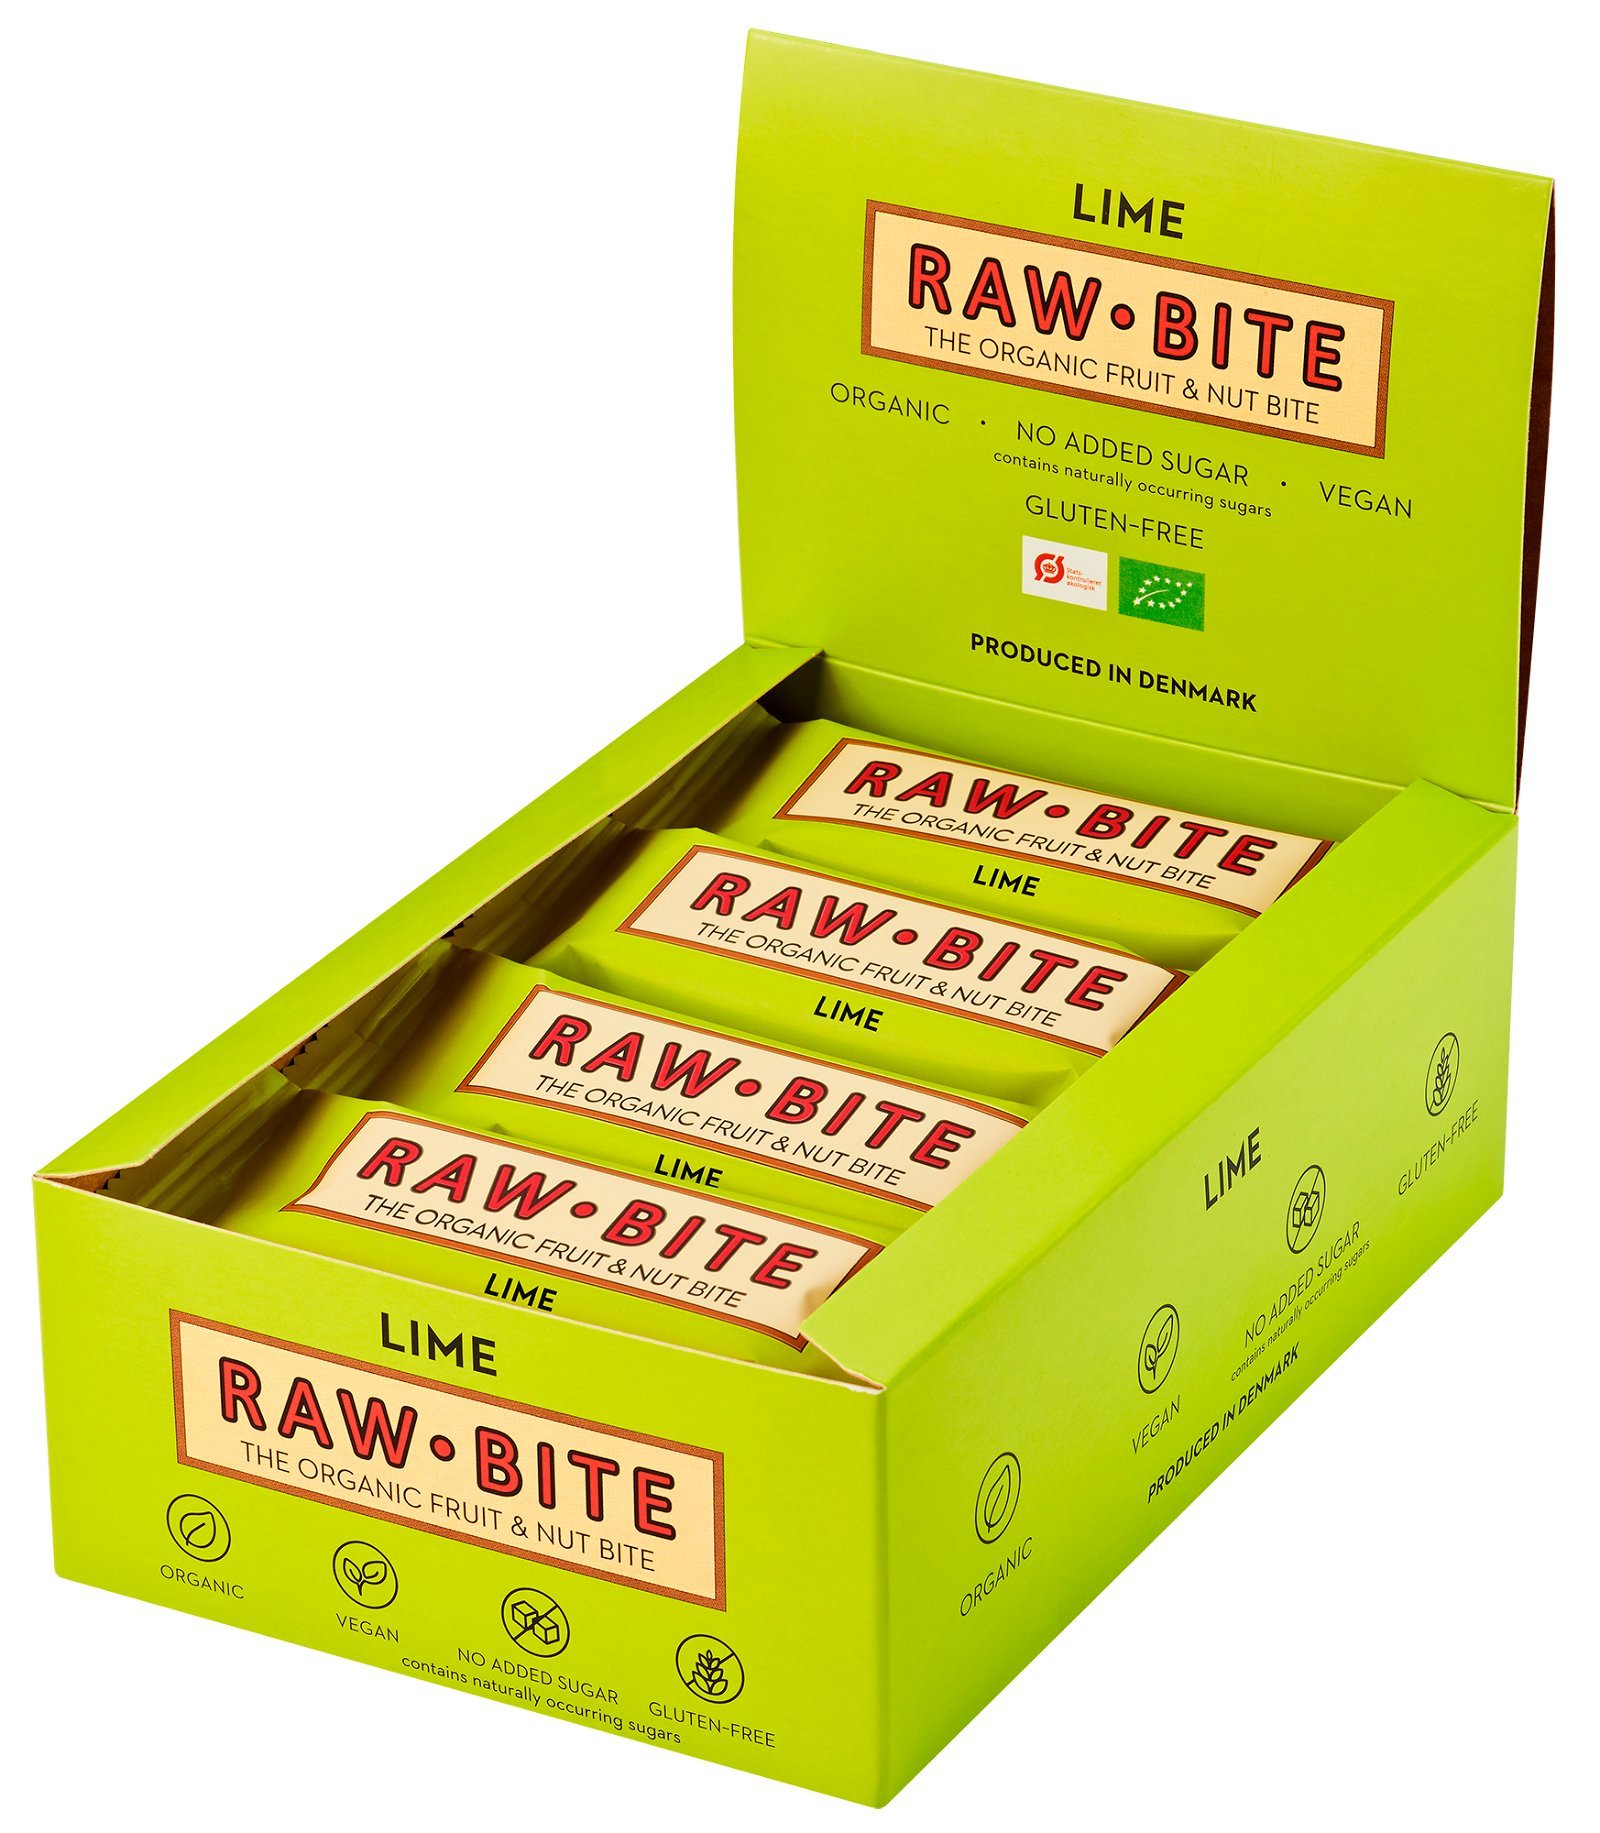 Rawbite raw barer